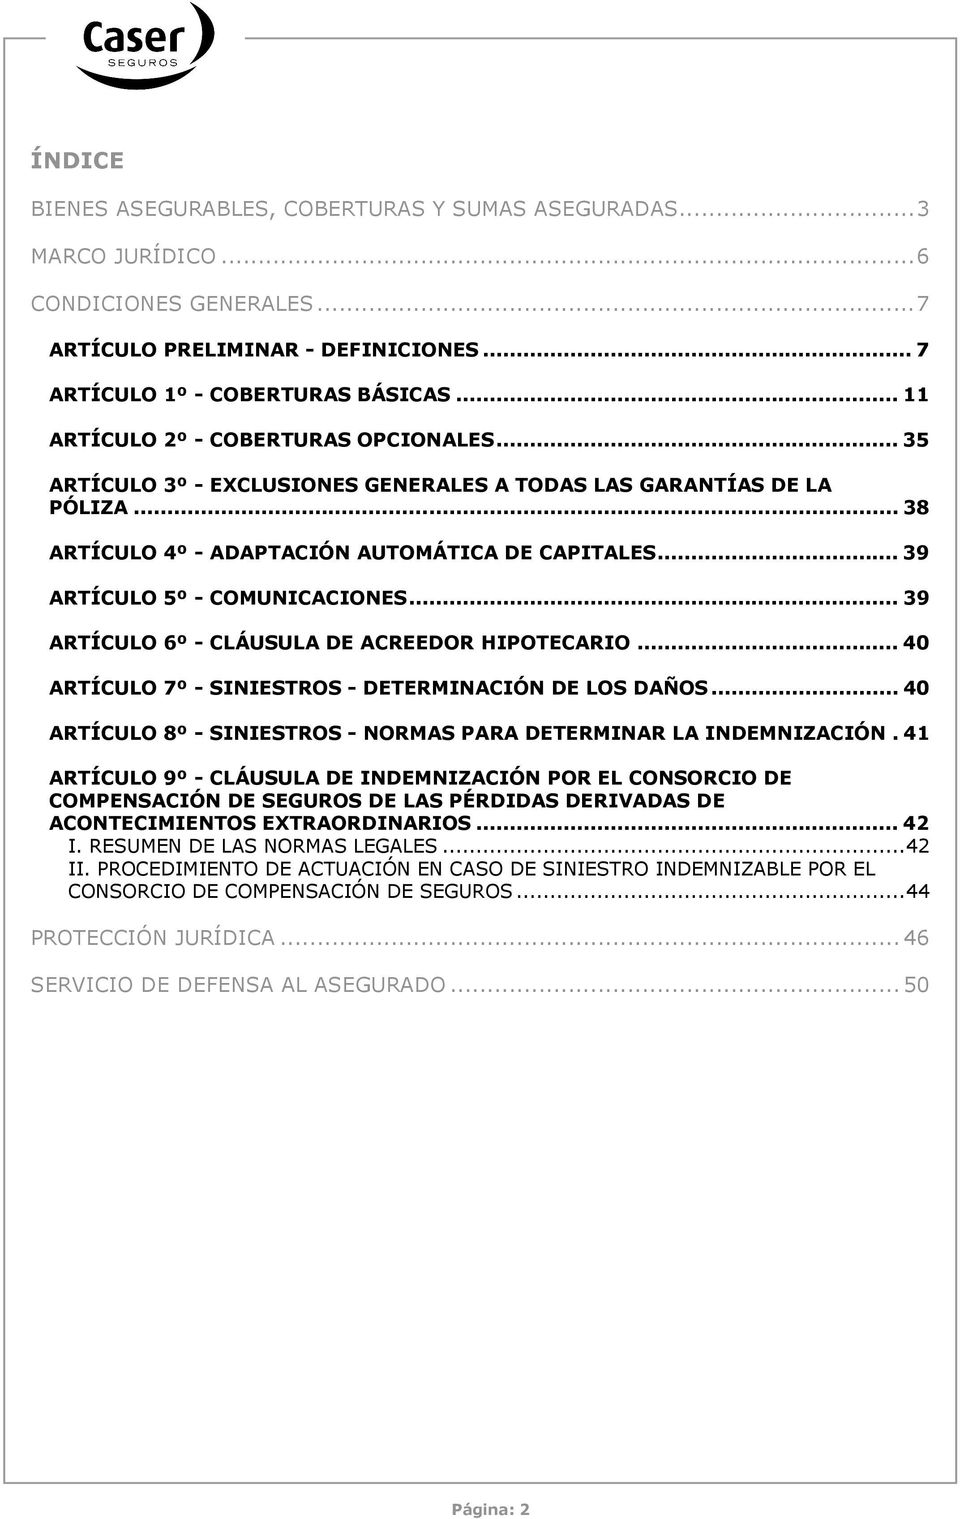 .. 39 ARTÍCULO 5º - COMUNICACIONES... 39 ARTÍCULO 6º - CLÁUSULA DE ACREEDOR HIPOTECARIO... 40 ARTÍCULO 7º - SINIESTROS - DETERMINACIÓN DE LOS DAÑOS.